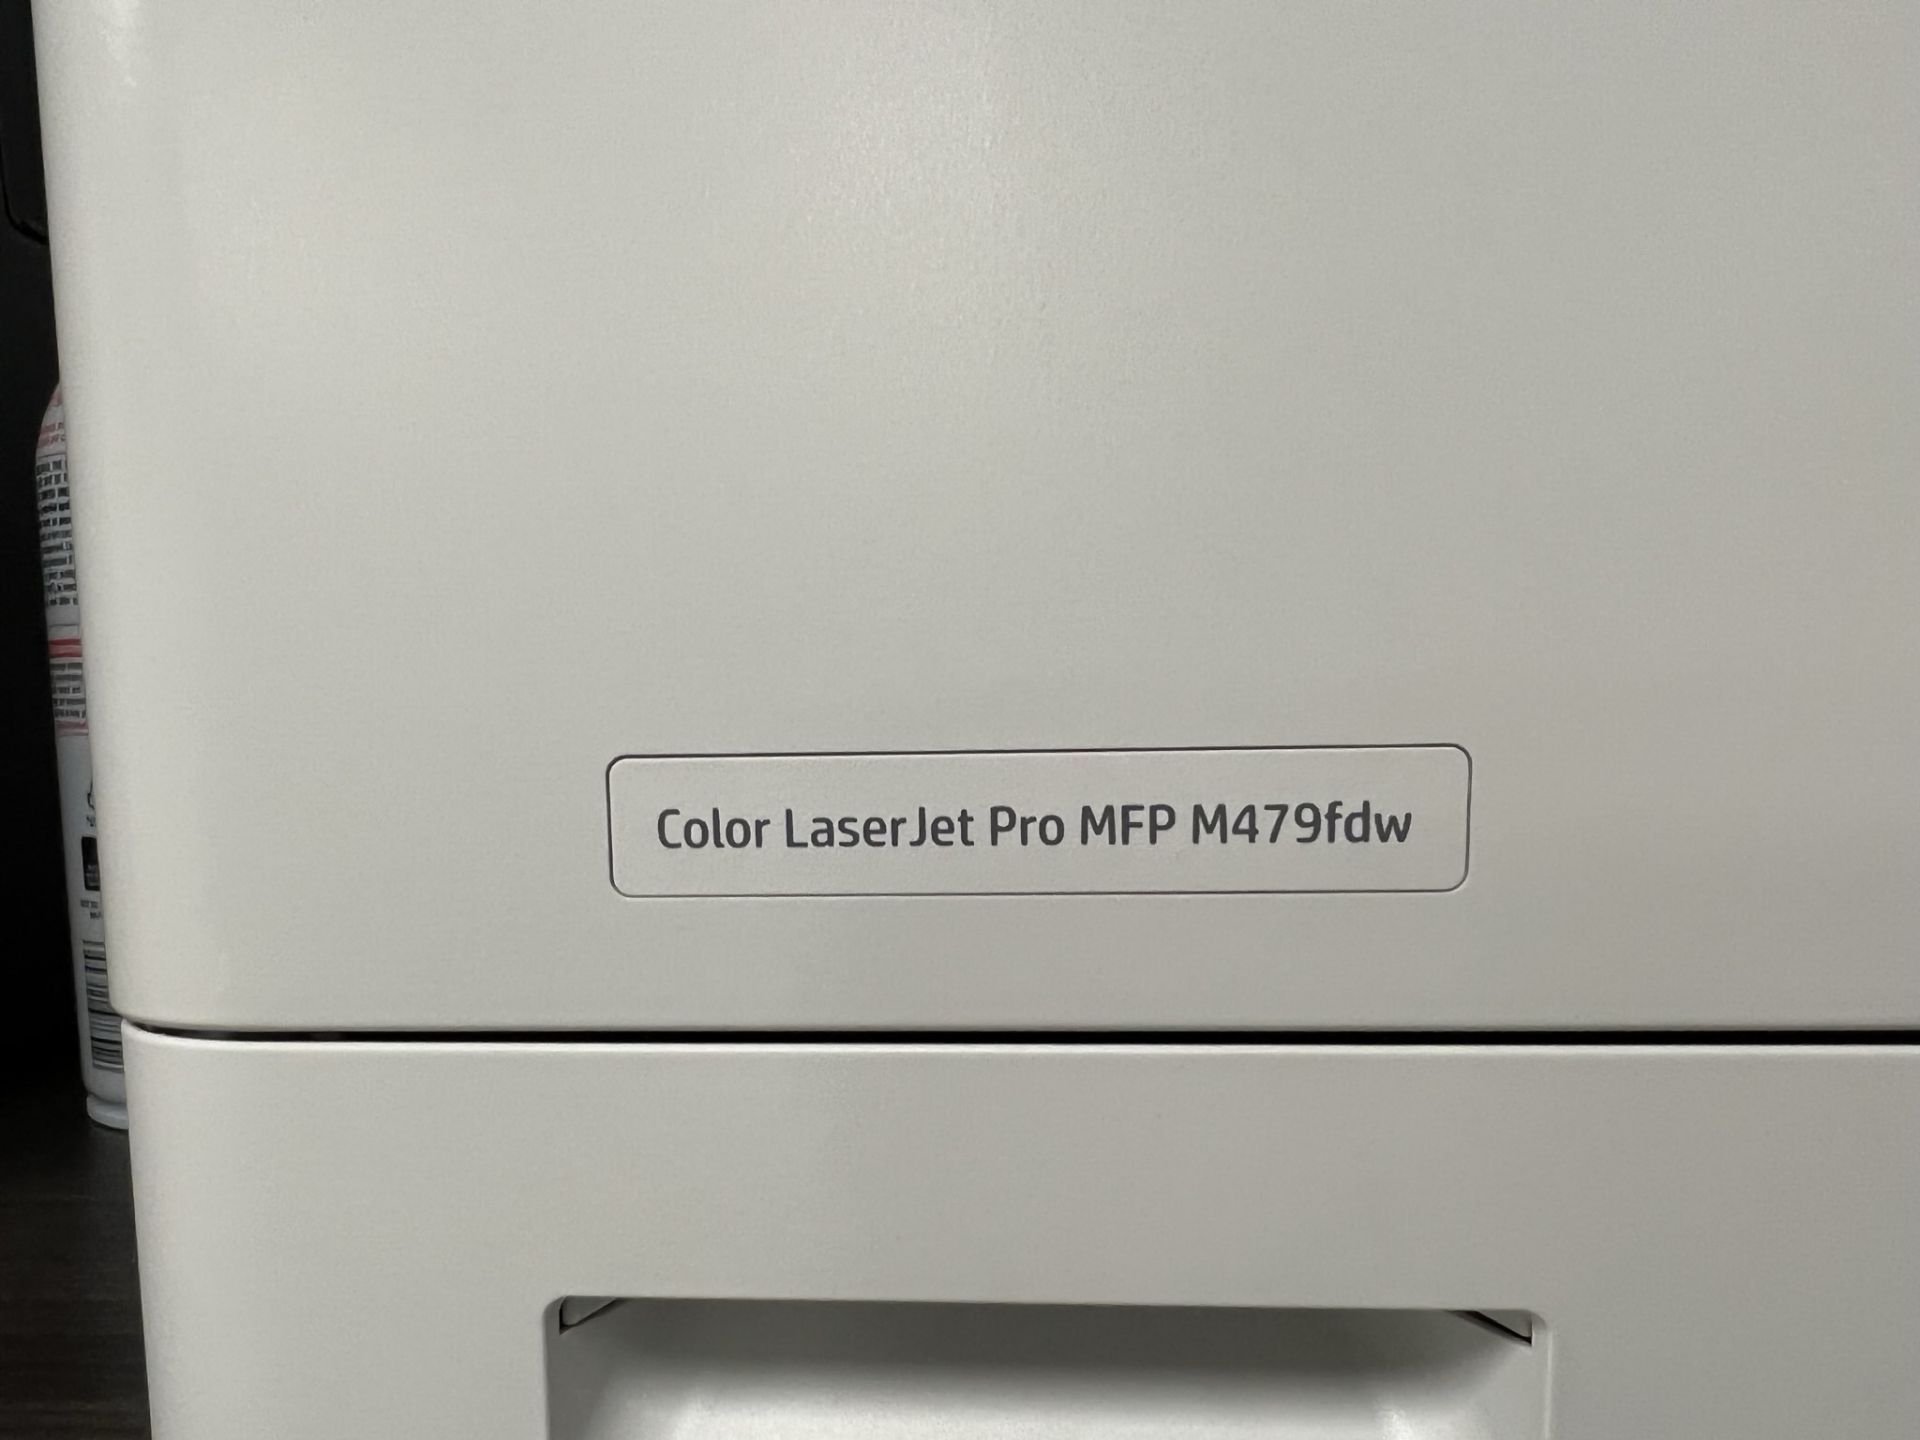 Multifunction Printer - Image 2 of 2